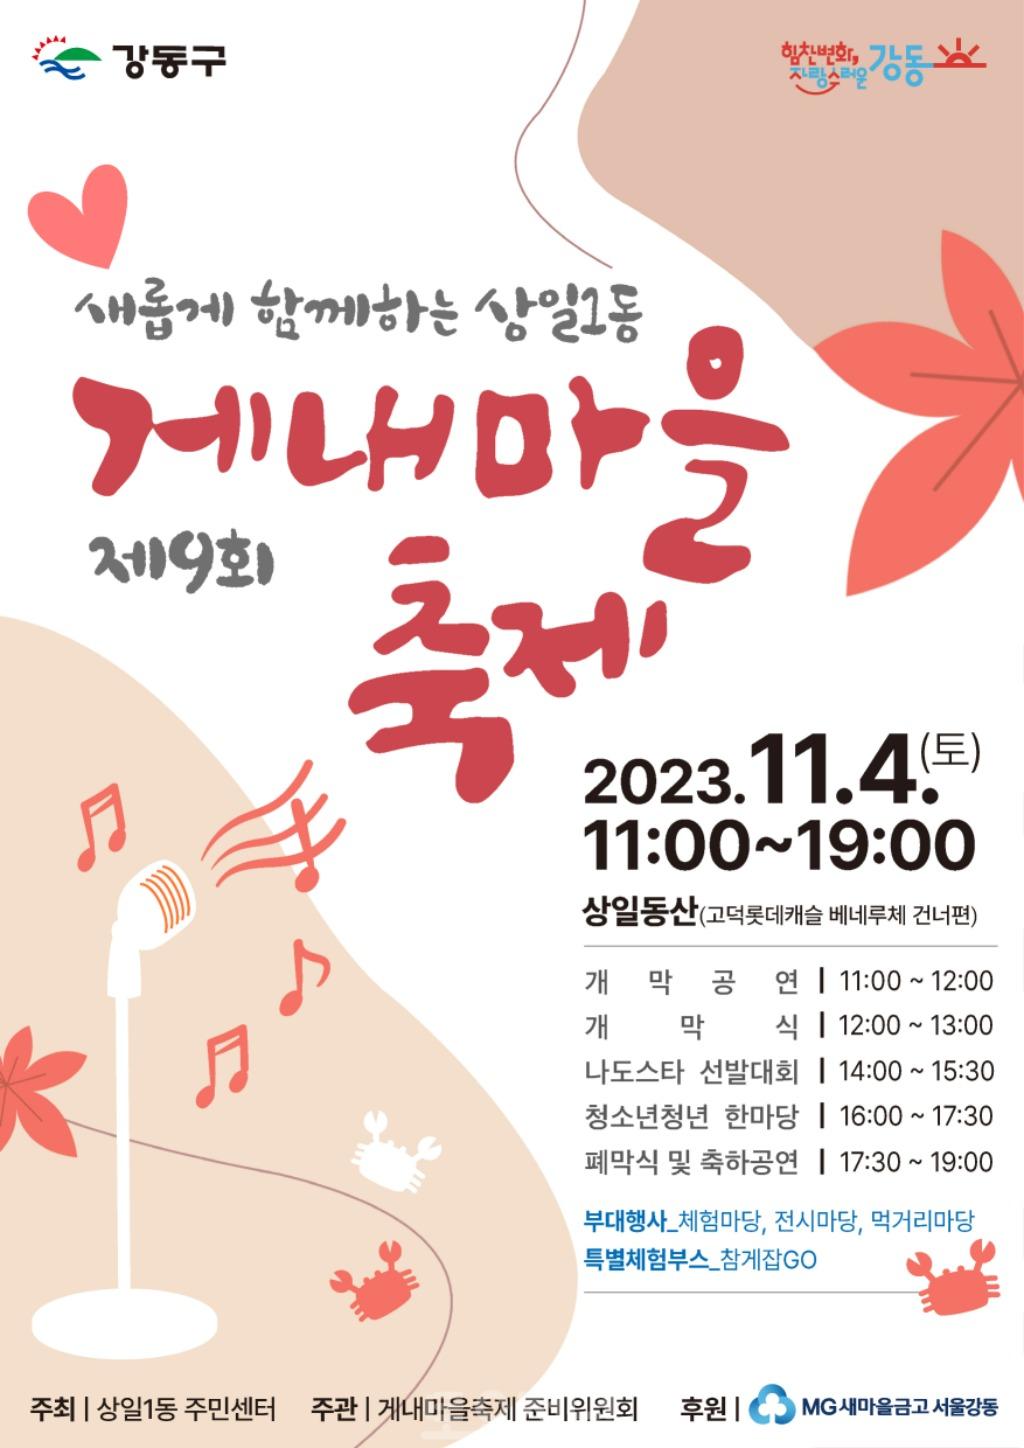 강동구 상일1동, 새롭게 함께하는 제9회 게내마을축제 개최.jpg